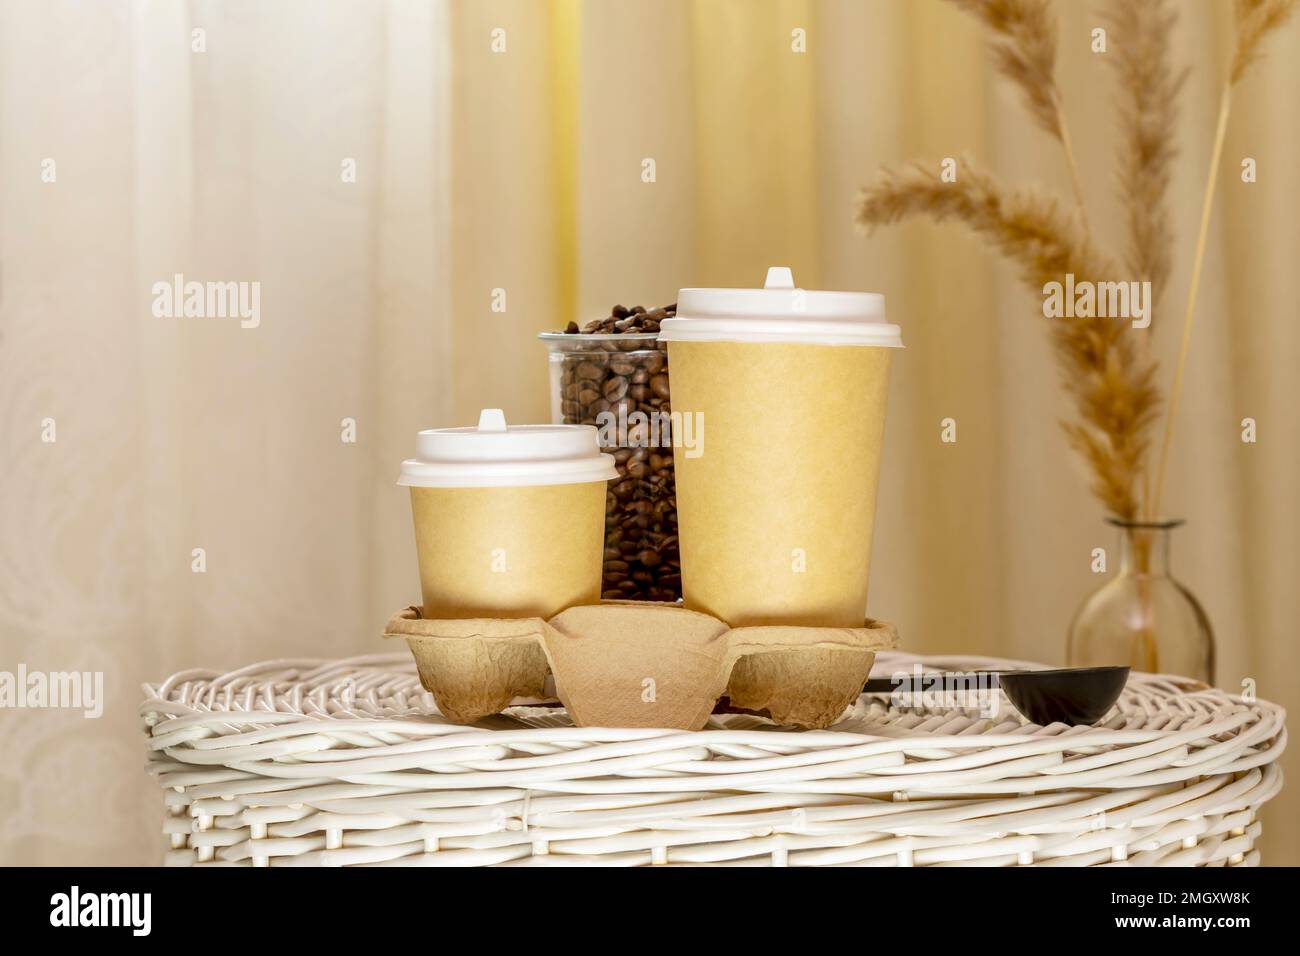 Café para llevar. Composición de café con dos tazas de cartón ecológicas desechables en la cesta de mimbre en el interior ligero con flores secas. Café para llevar Foto de stock